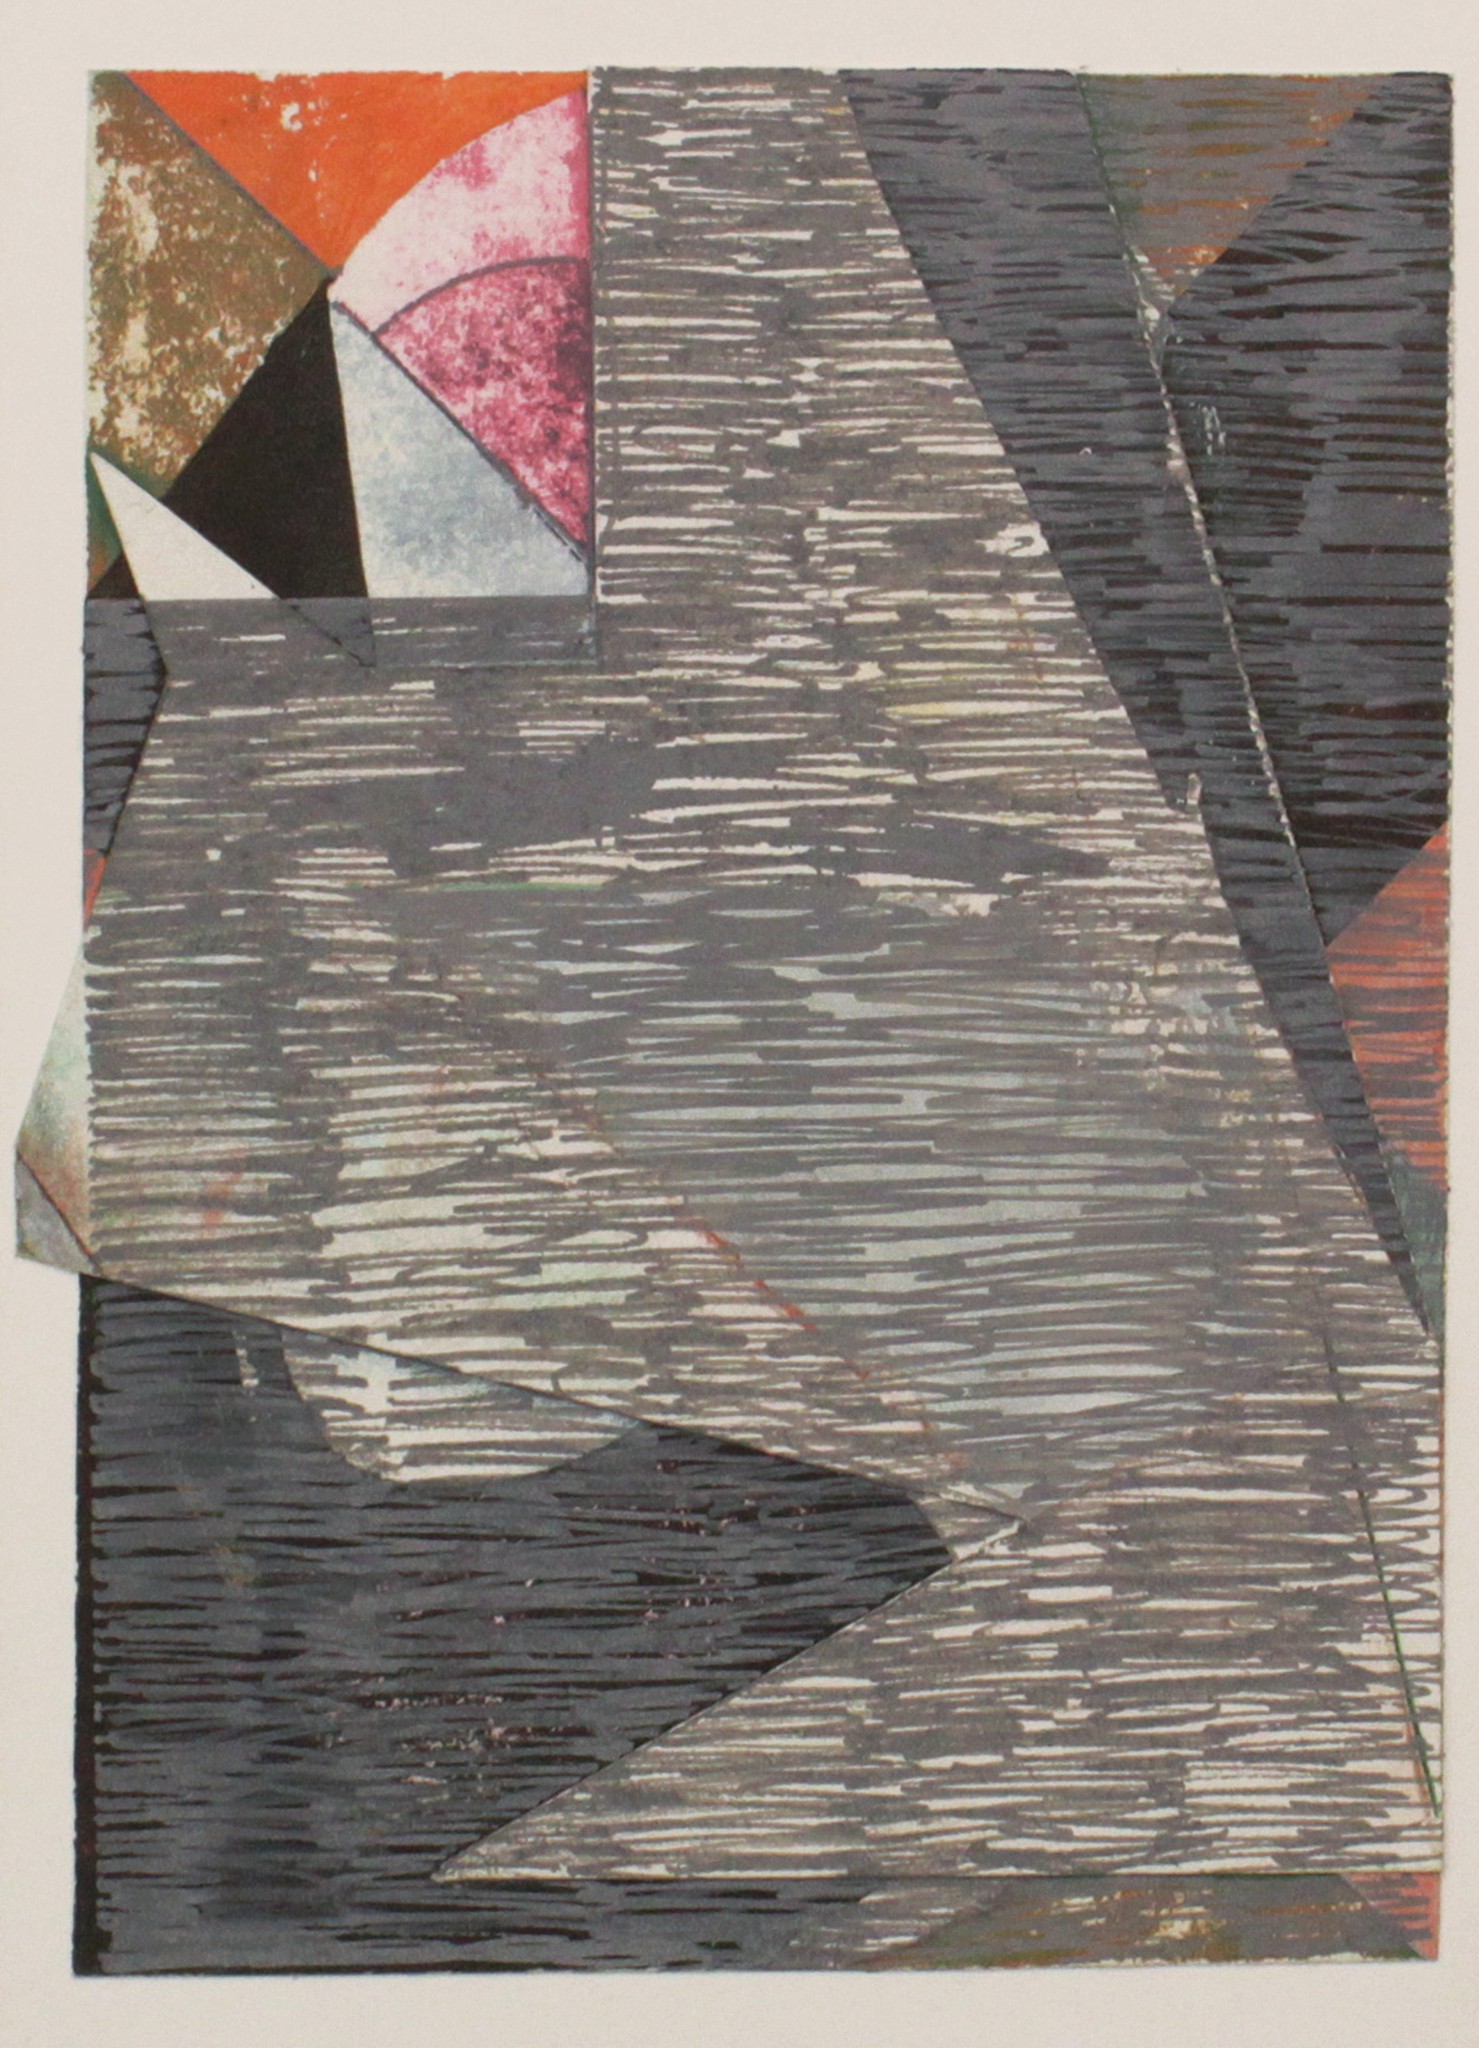 Utan titel kollage, gouache på kartong, 29 x 21 cm, 2019